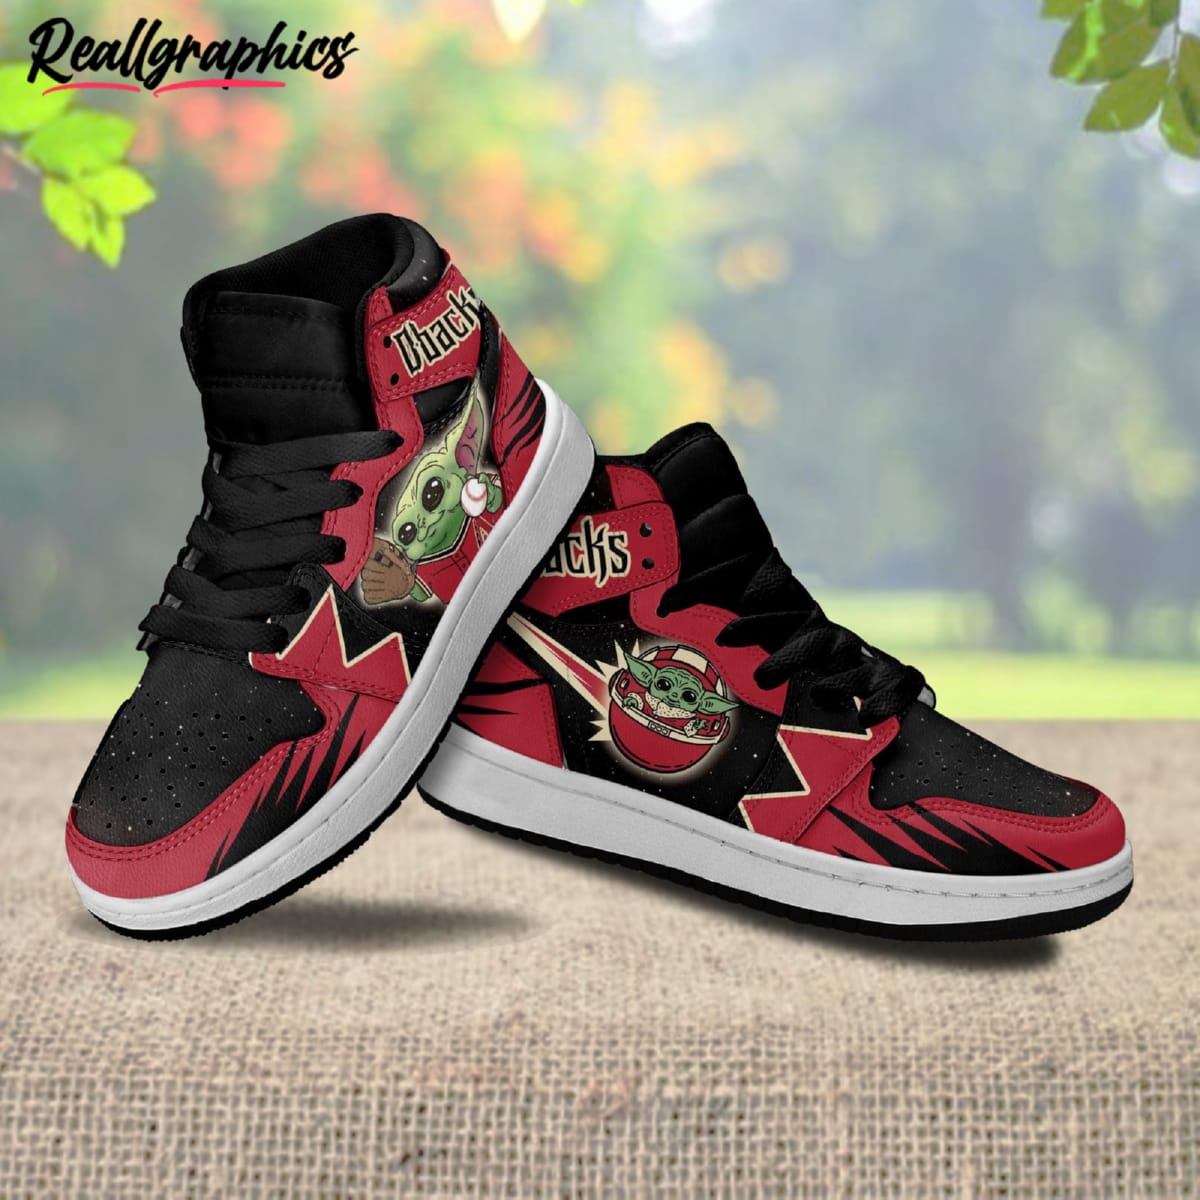 arizona-diamondbacks-baby-yoda-air-jordan-high-sneakers-custom-sport-shoes-2